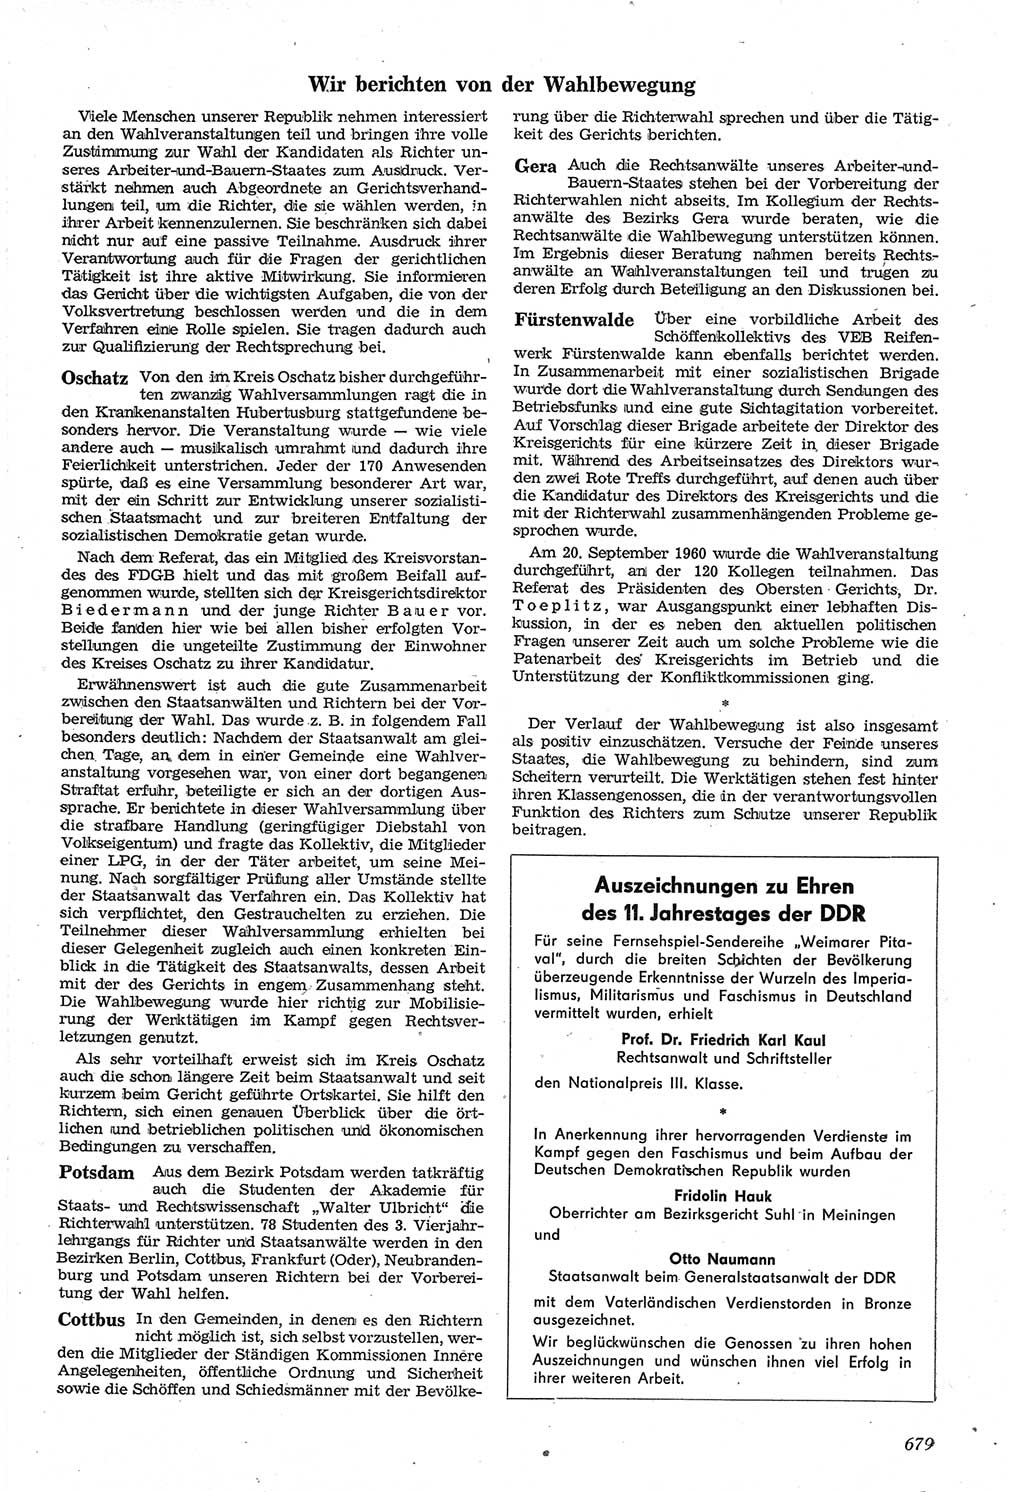 Neue Justiz (NJ), Zeitschrift für Recht und Rechtswissenschaft [Deutsche Demokratische Republik (DDR)], 14. Jahrgang 1960, Seite 679 (NJ DDR 1960, S. 679)